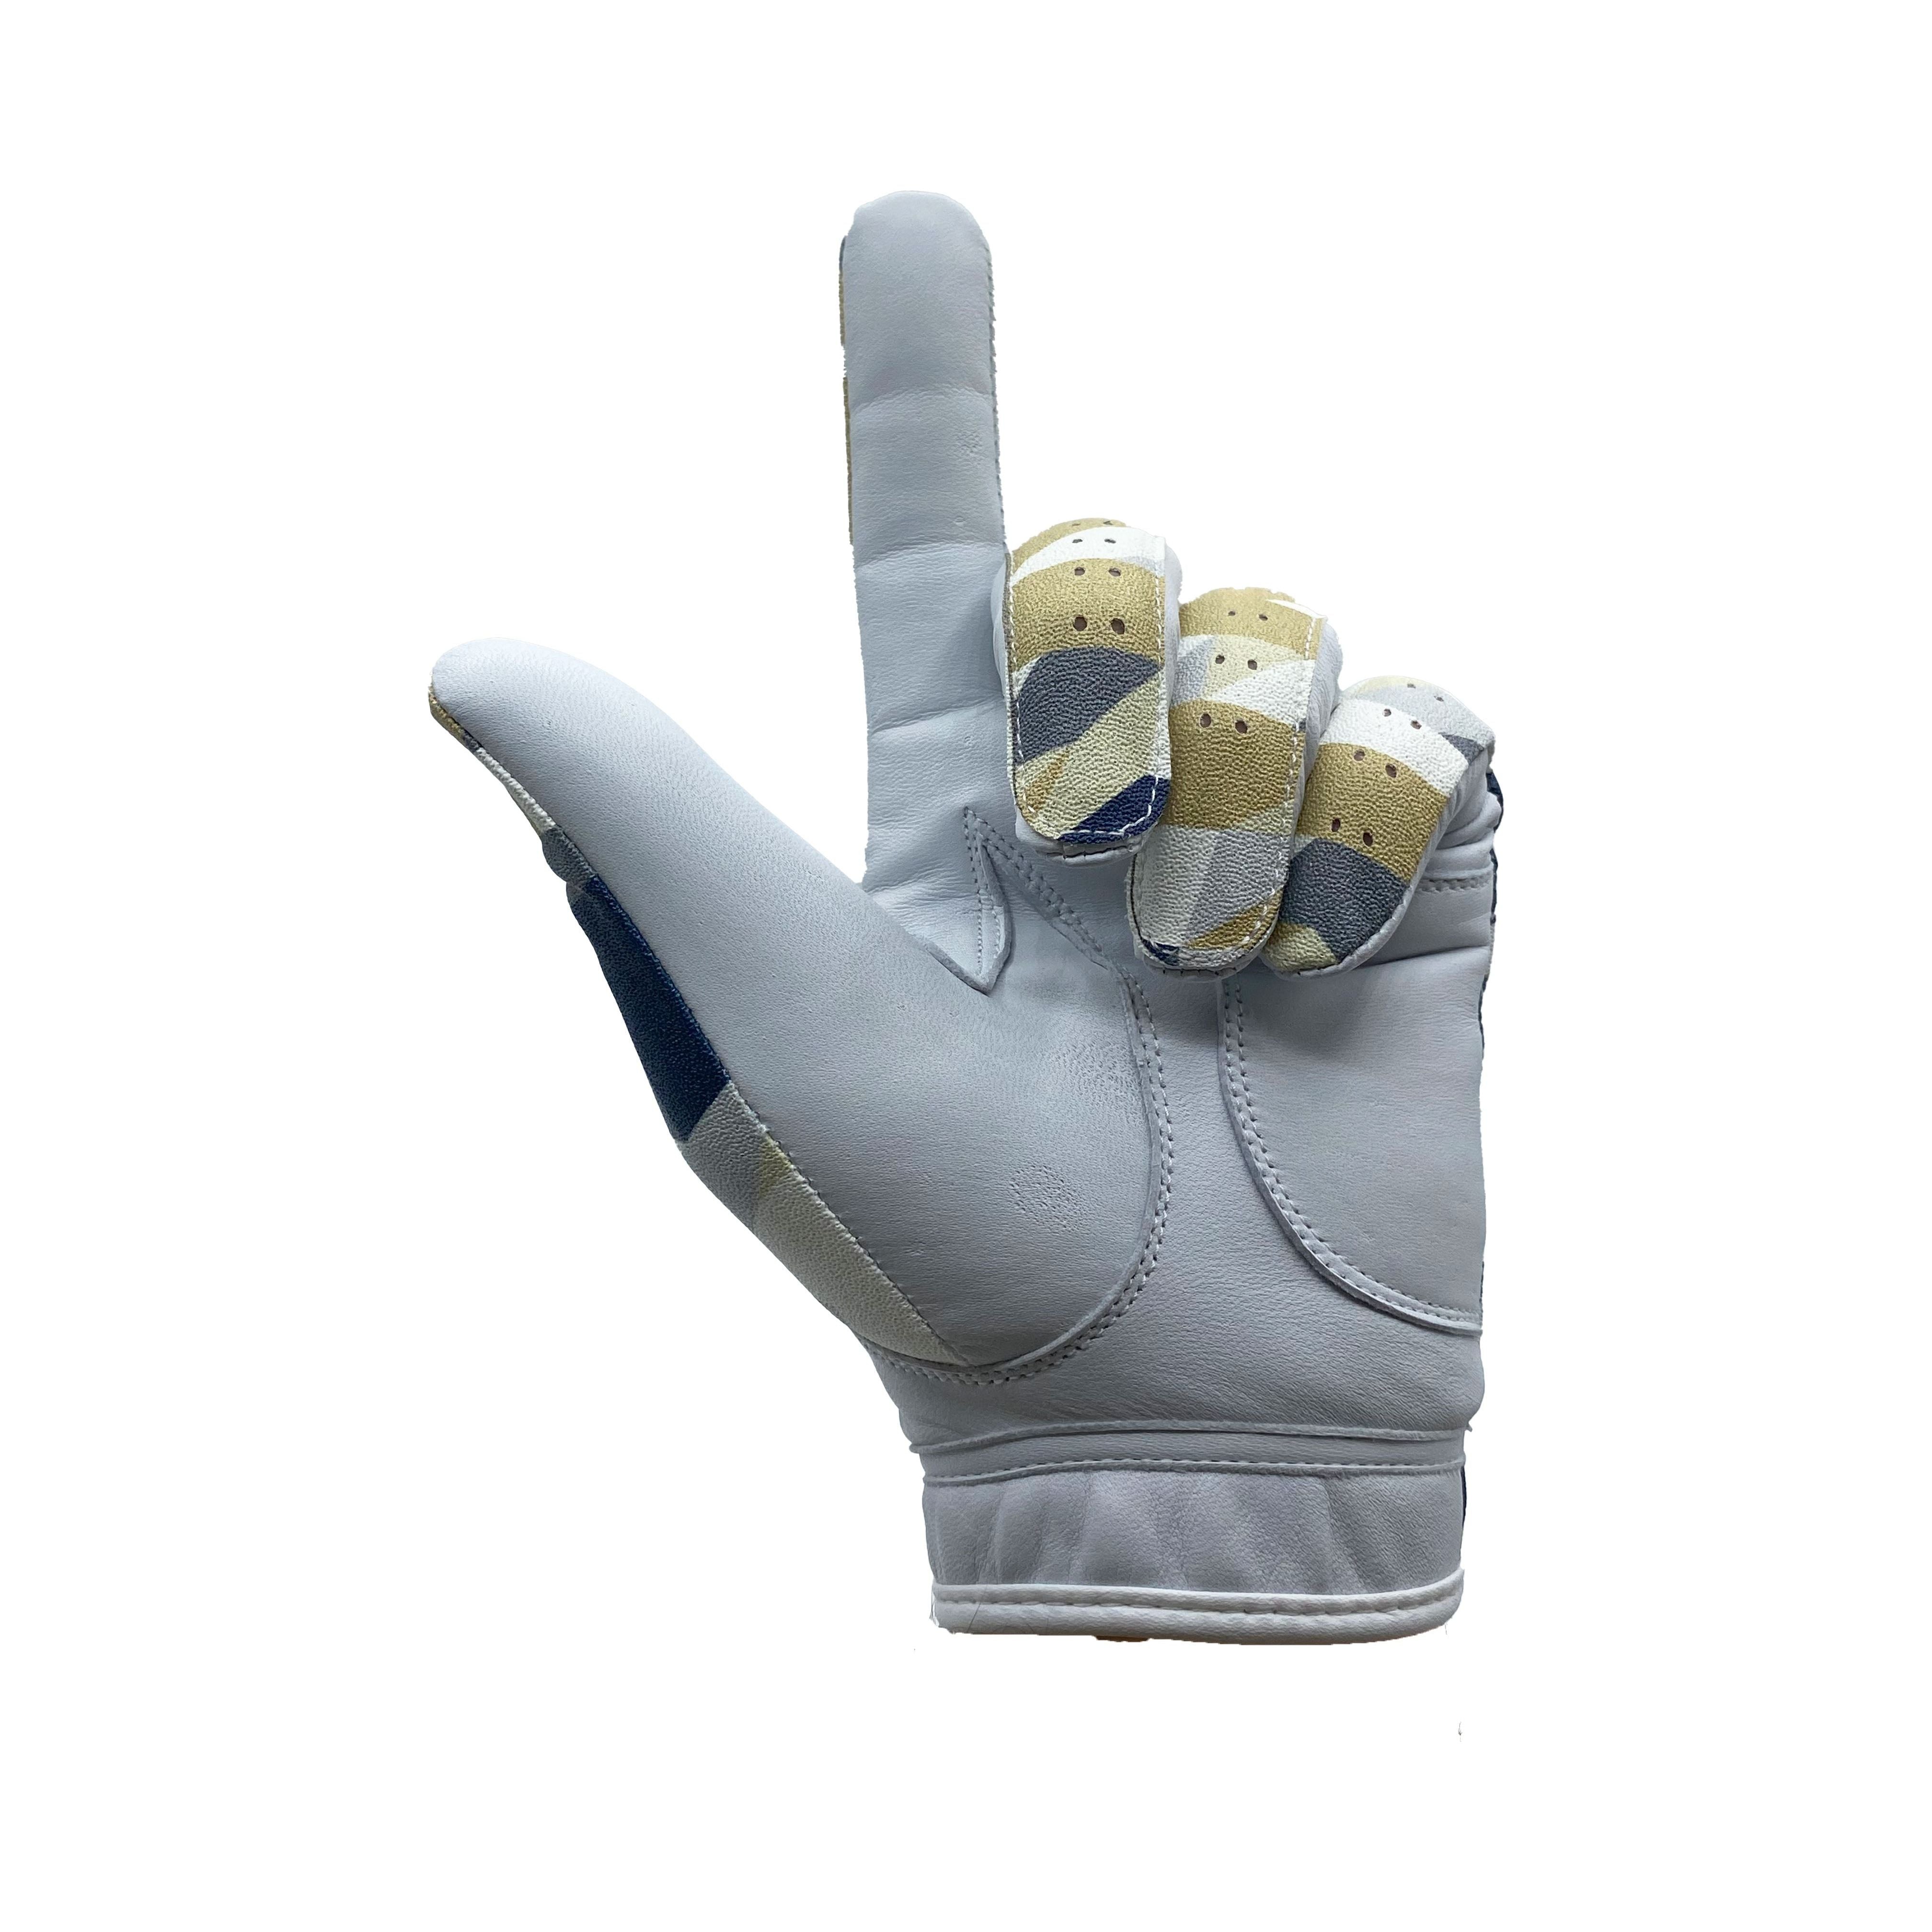 Urban Camo Glove Glove FreshGrip 